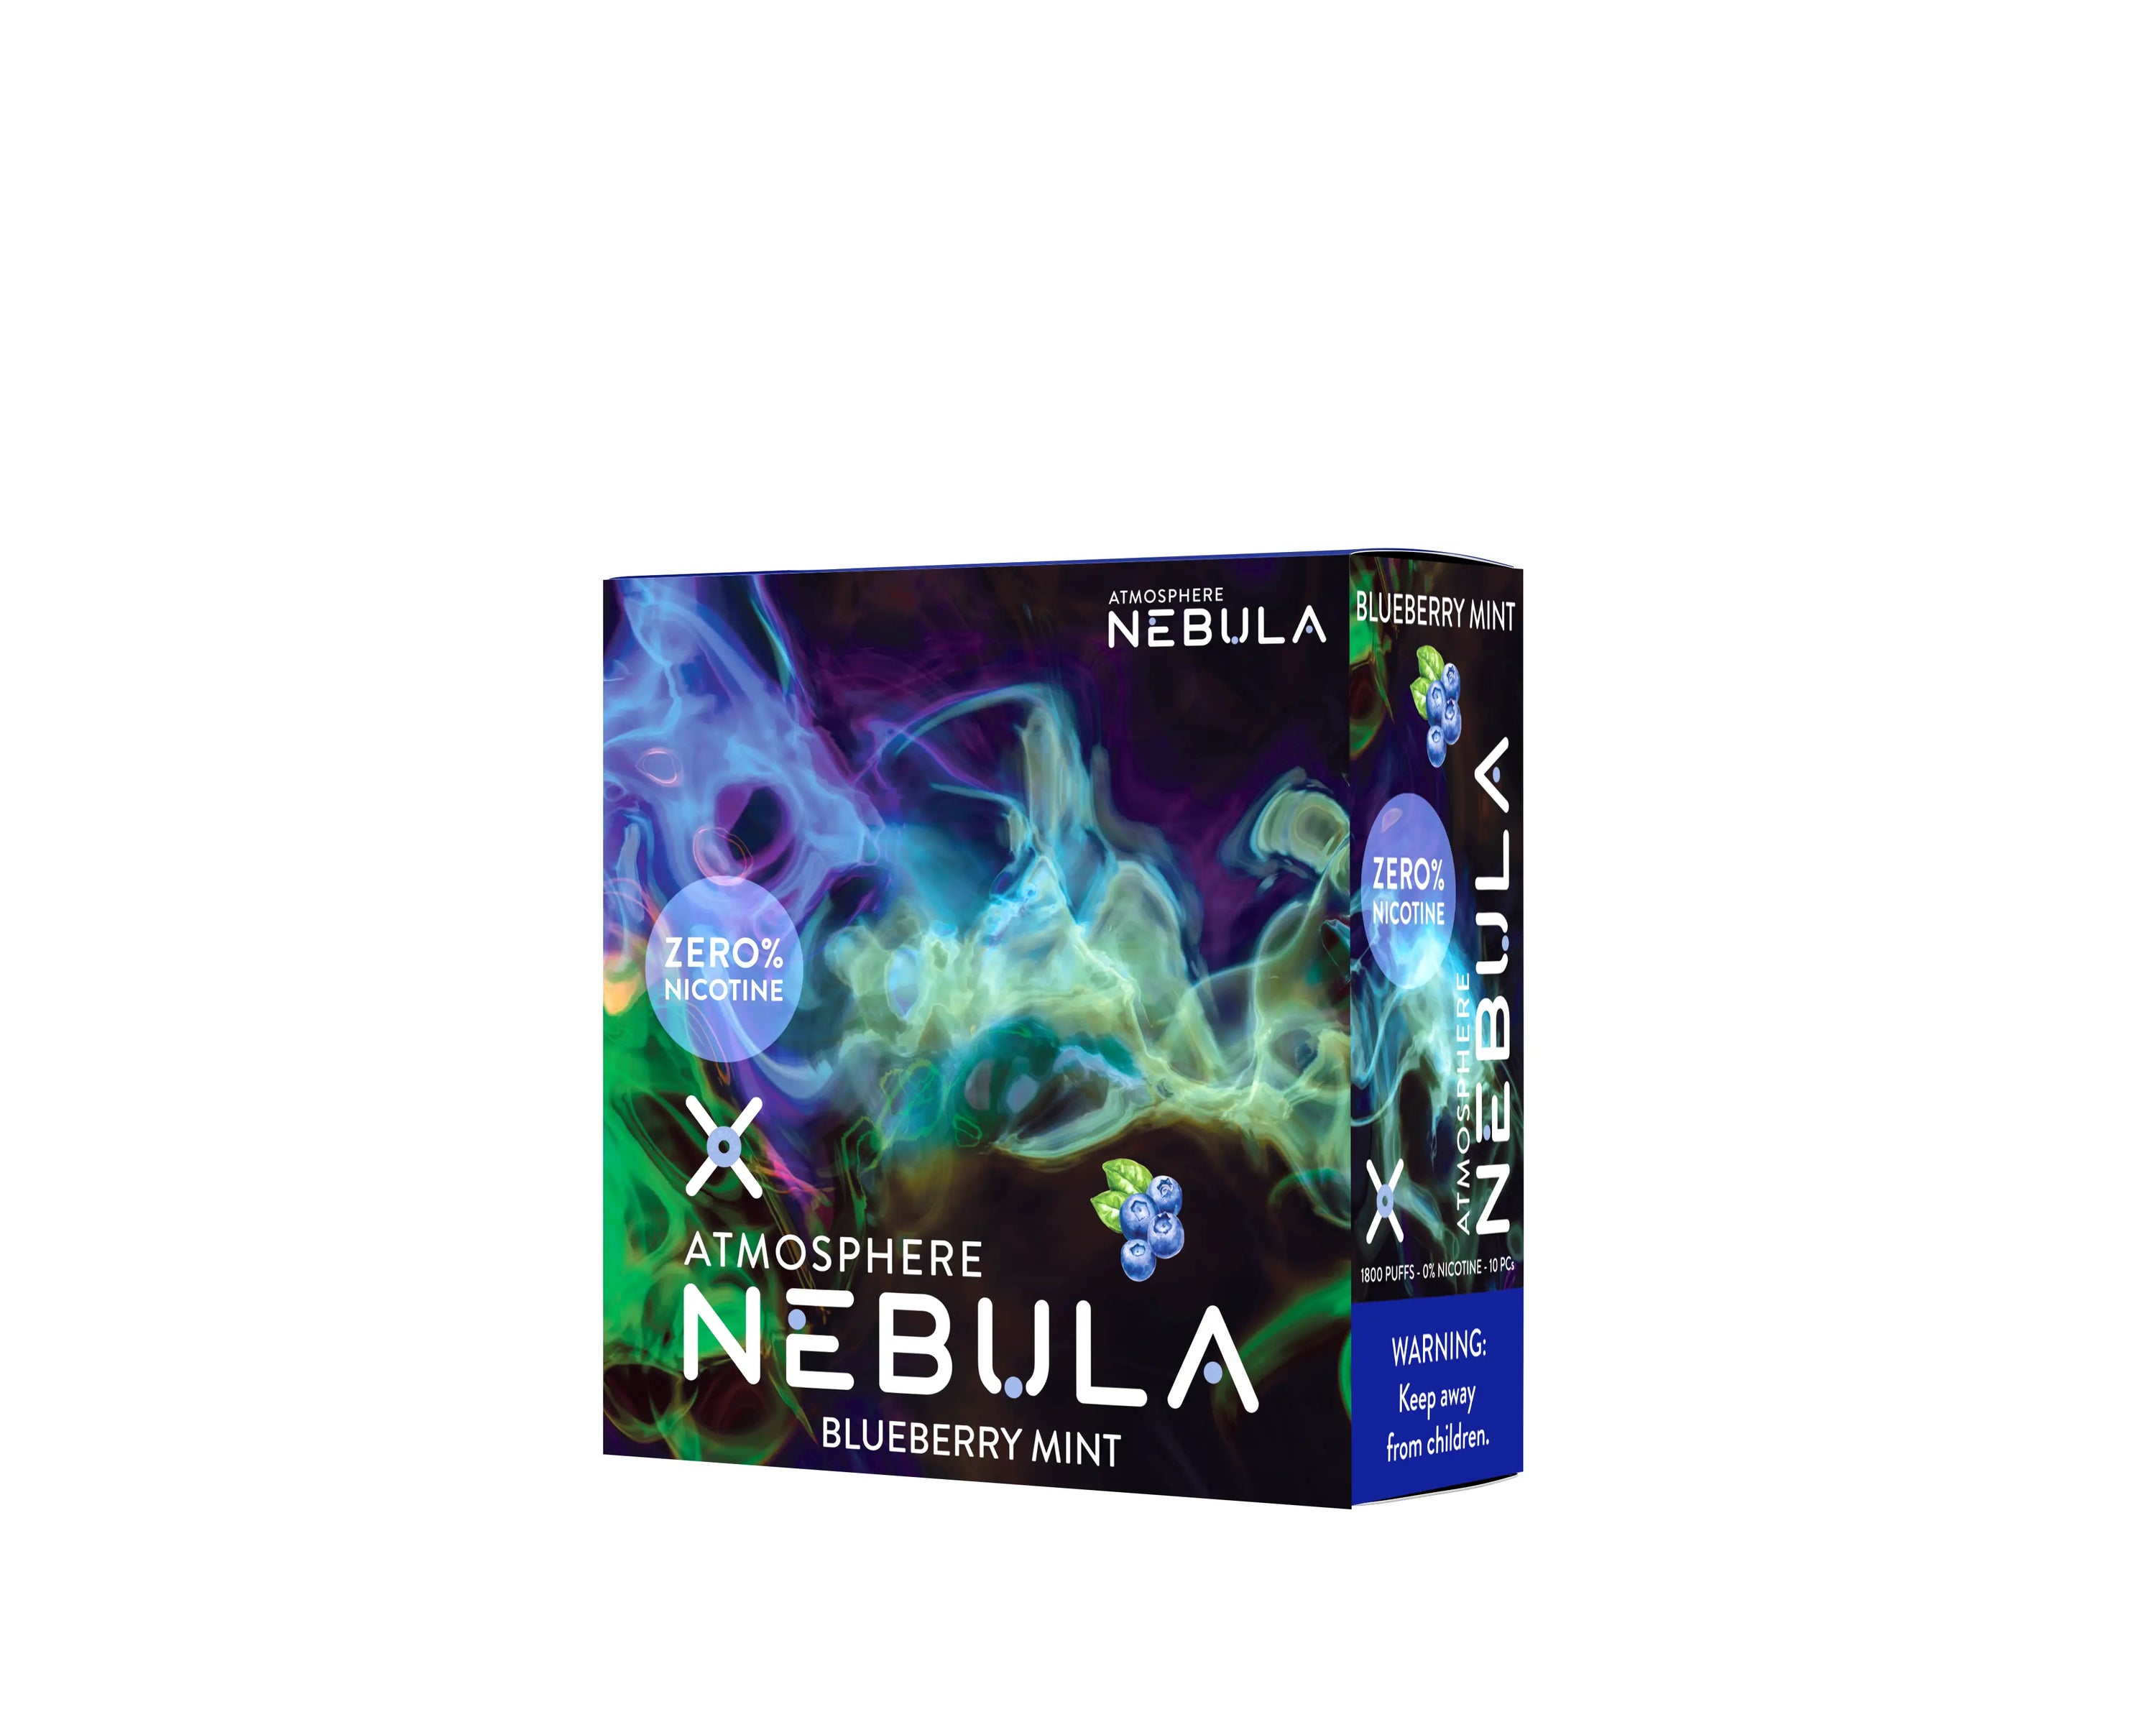 Nebula Atmosphere 0% 1800 Puffs - Blueberry Mint - B2B Nebula